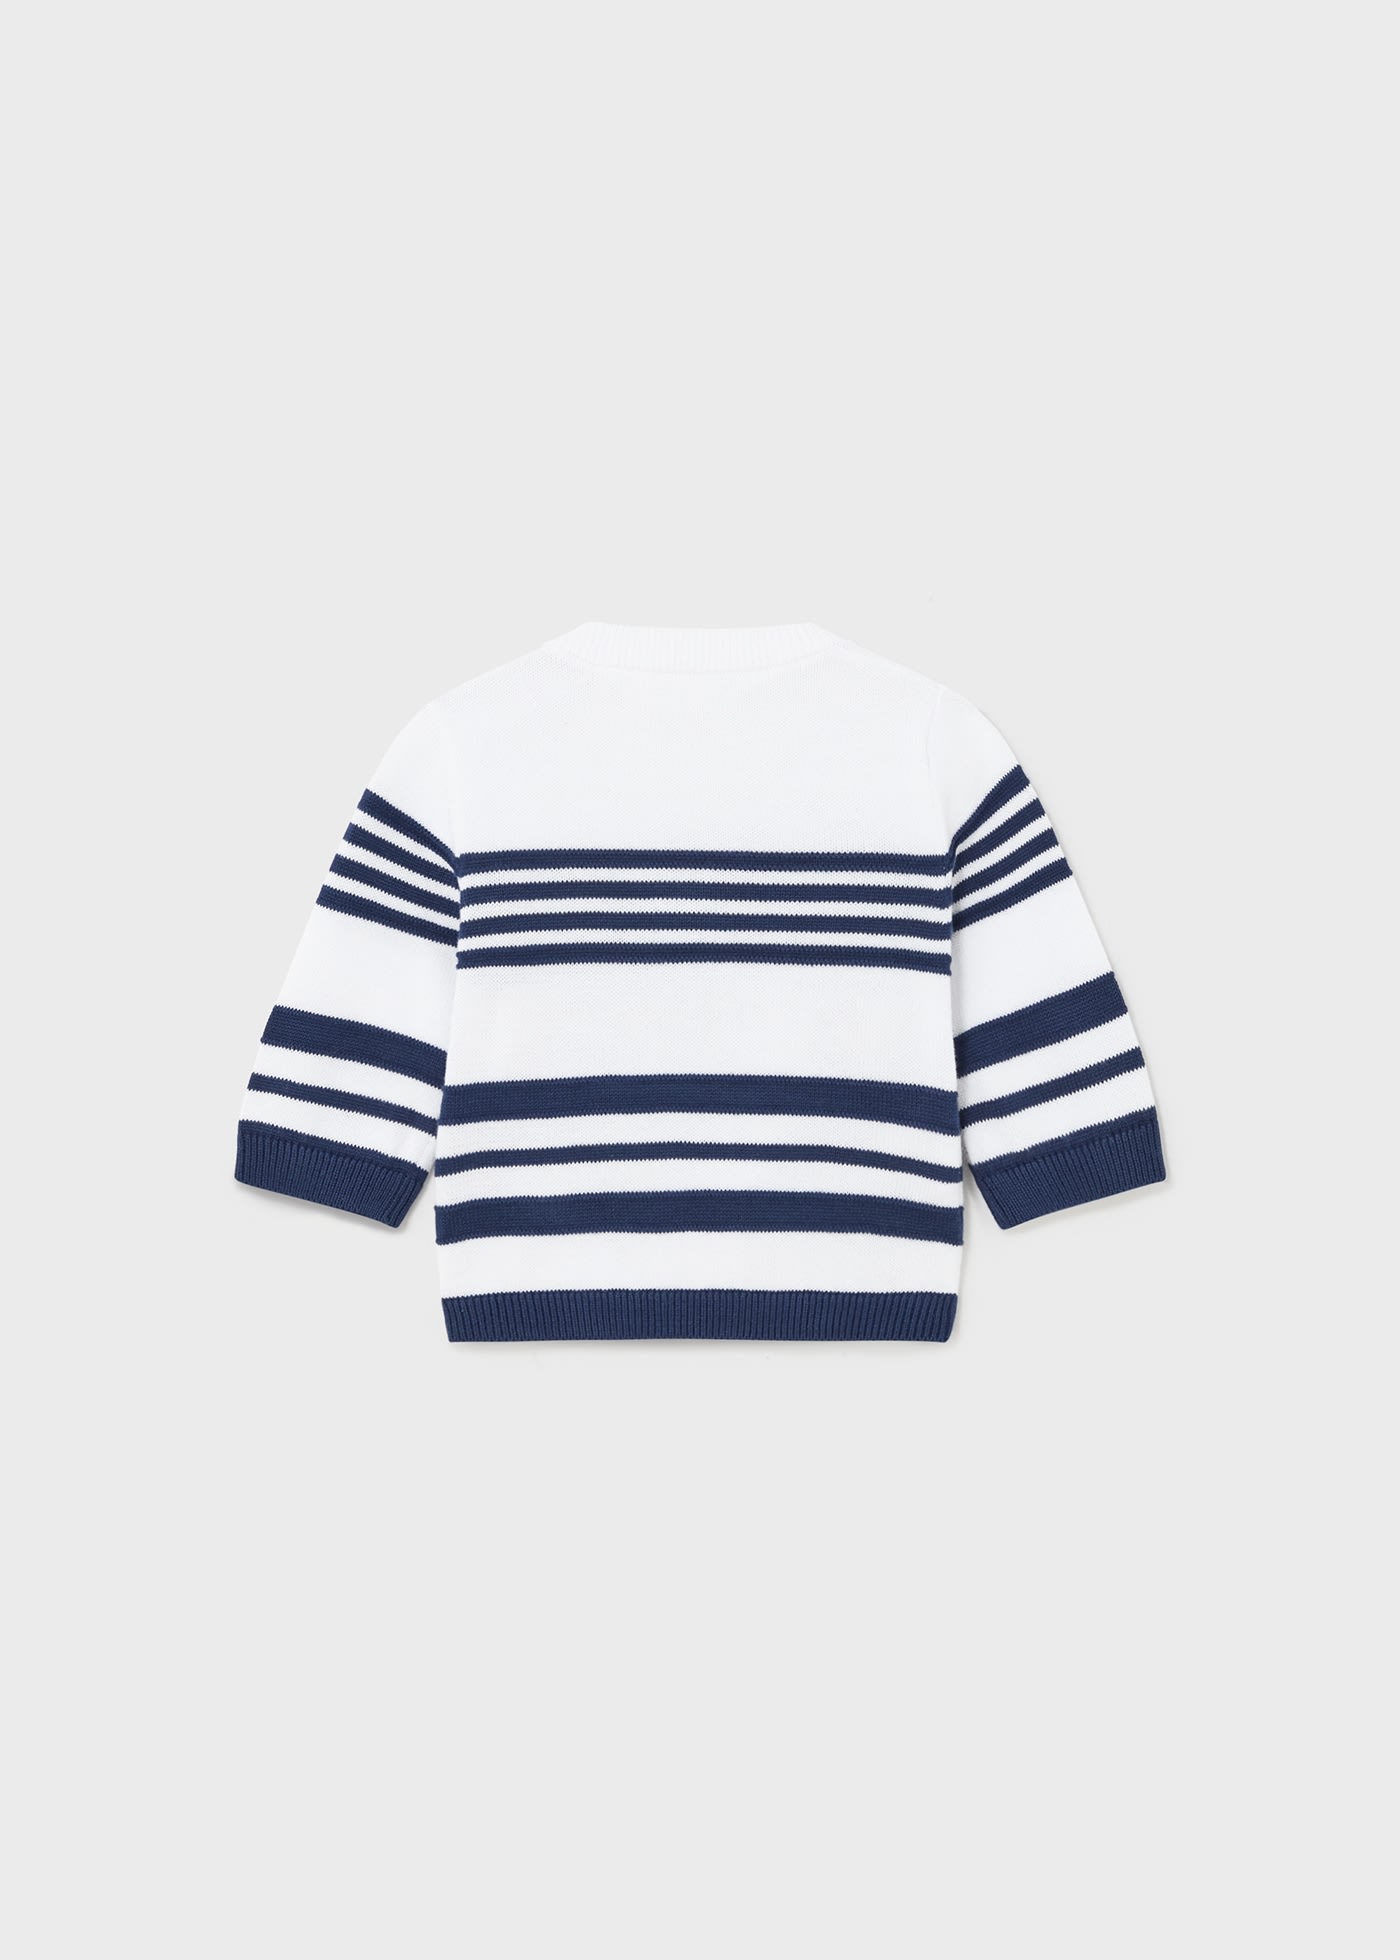 Maglione tricot Better Cotton neonato